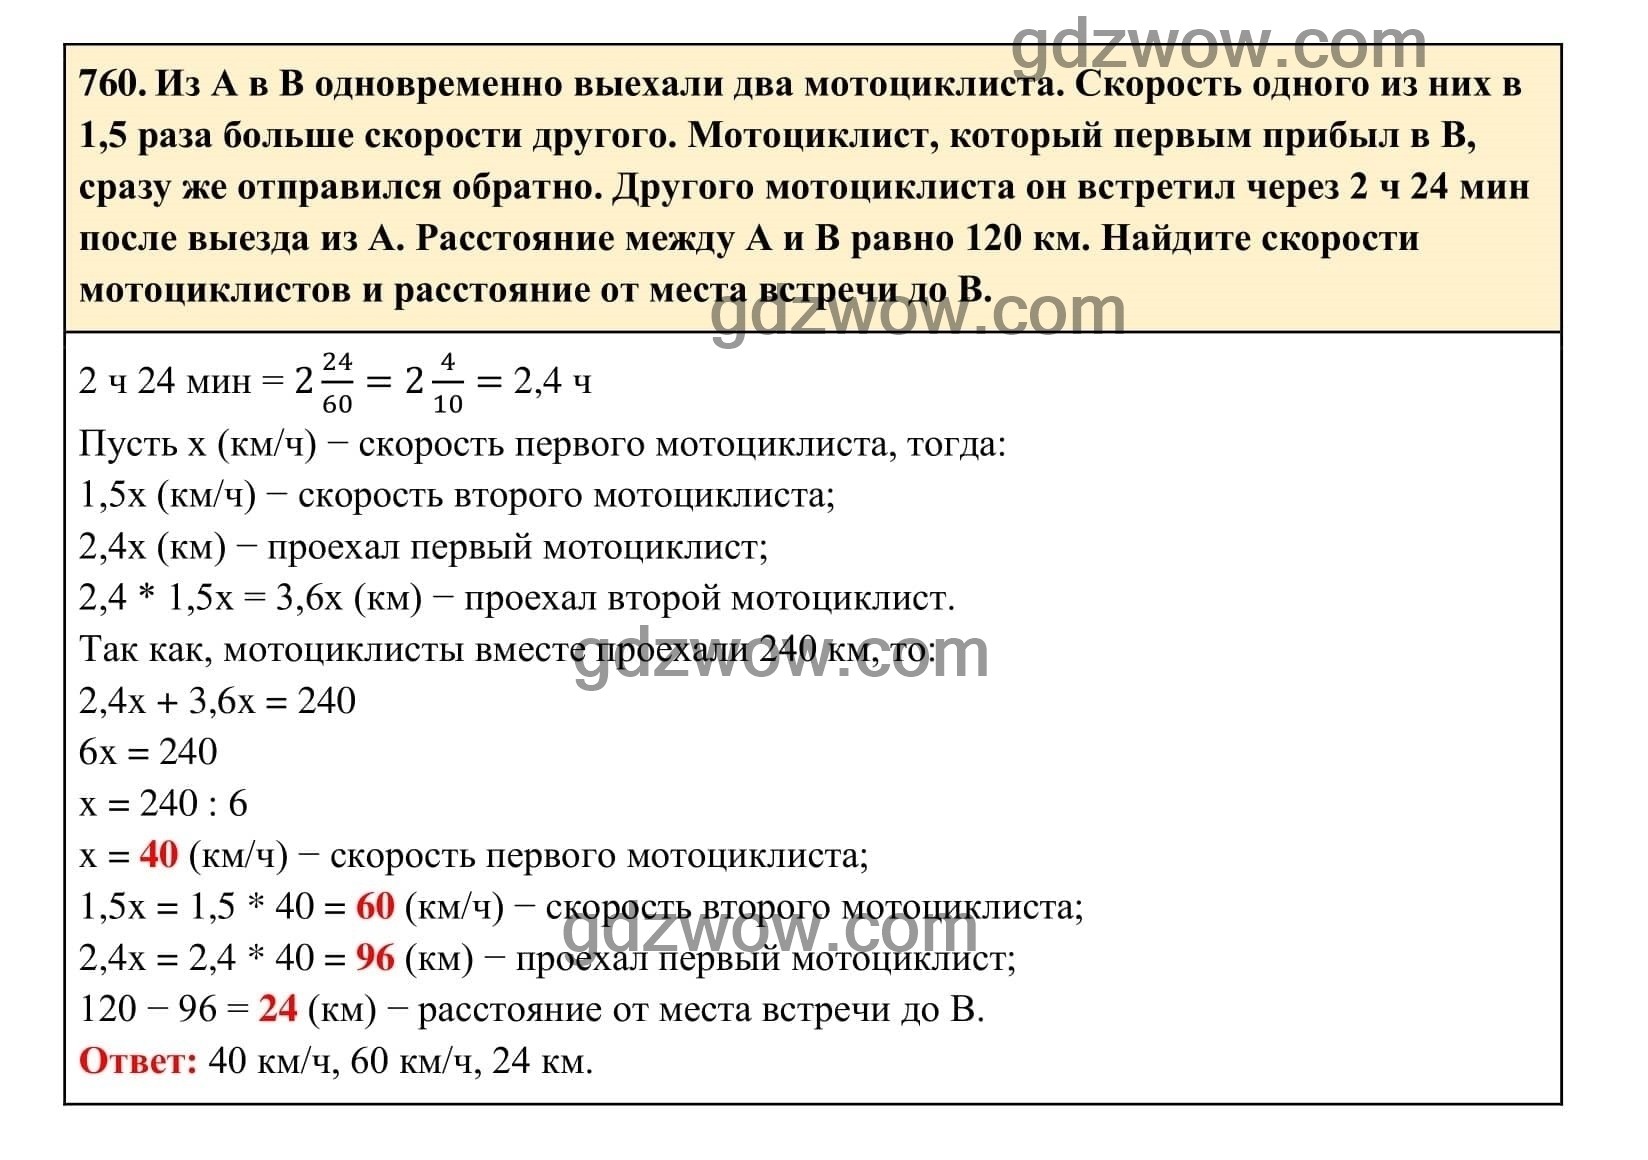 Упражнение 760 - ГДЗ по Алгебре 7 класс Учебник Макарычев (решебник) - GDZwow